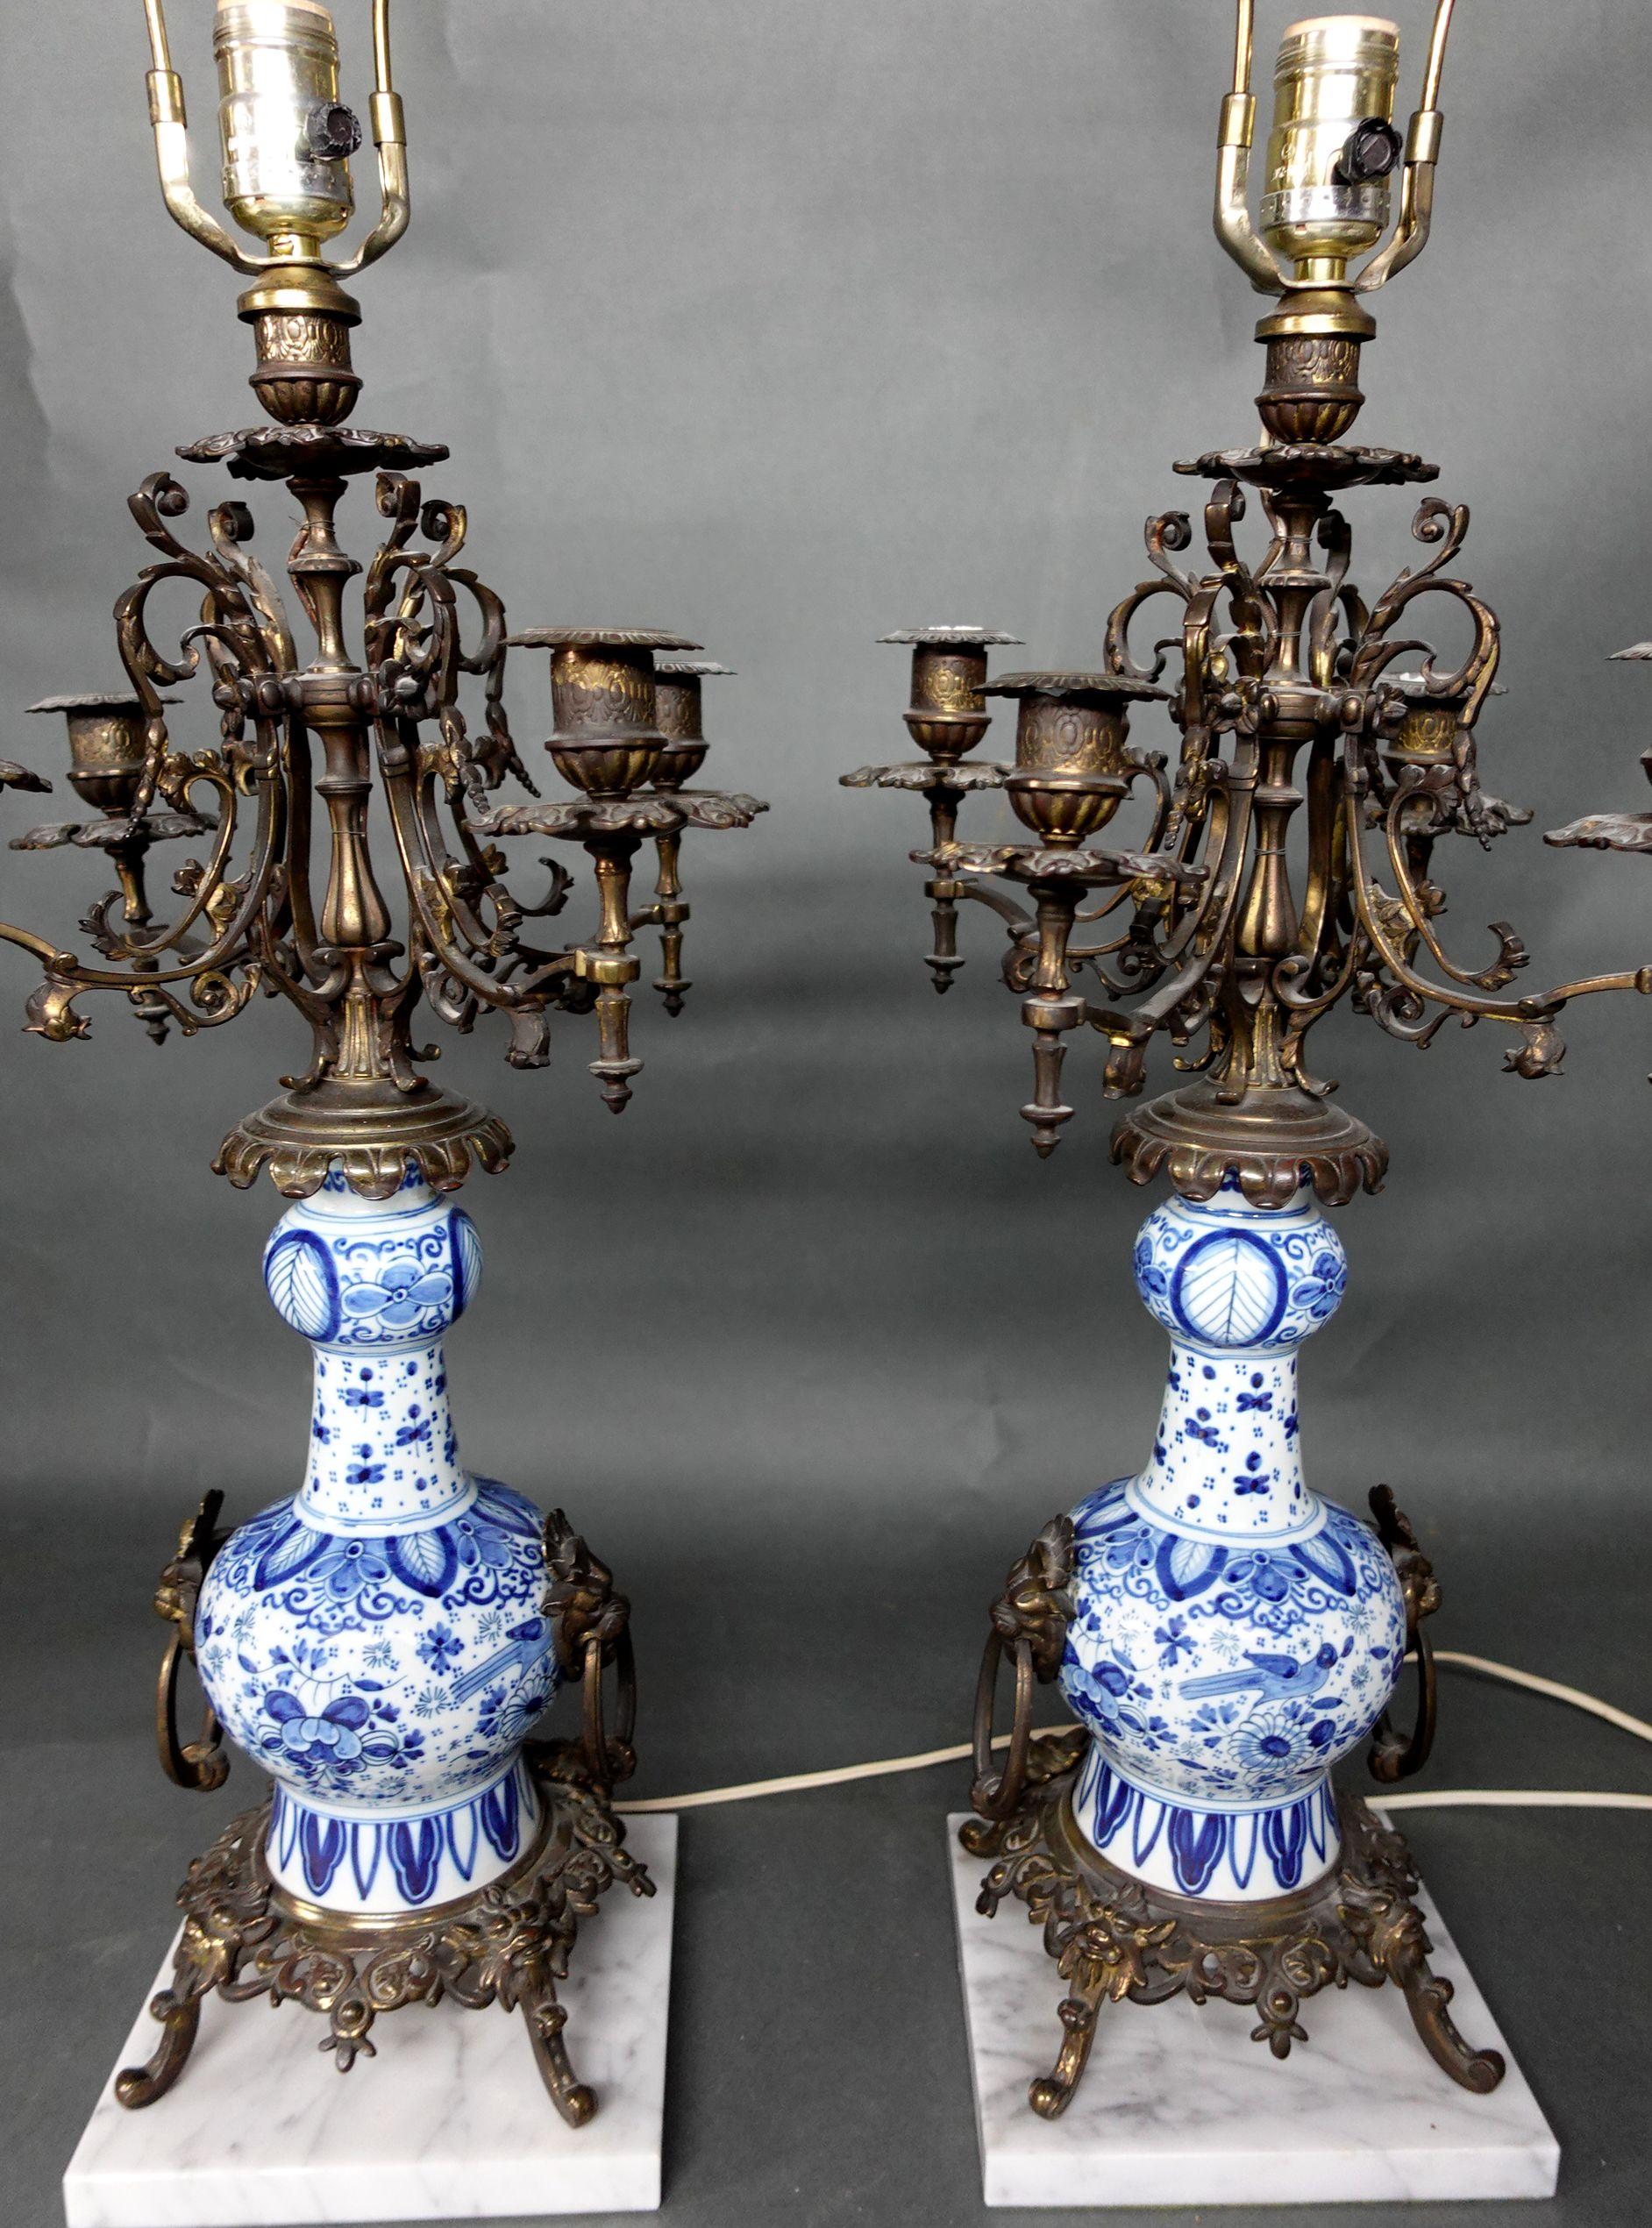 Paar blaue und weiße Porzellanvasen/Lampensockel
auf Metallfüßen und auf einem quadratischen Marmorsockel stehend, elektrifiziert, Gesamt-HT. 31 1/2, Vase ht. 10 in.
Die Lampen funktionieren gut.

 